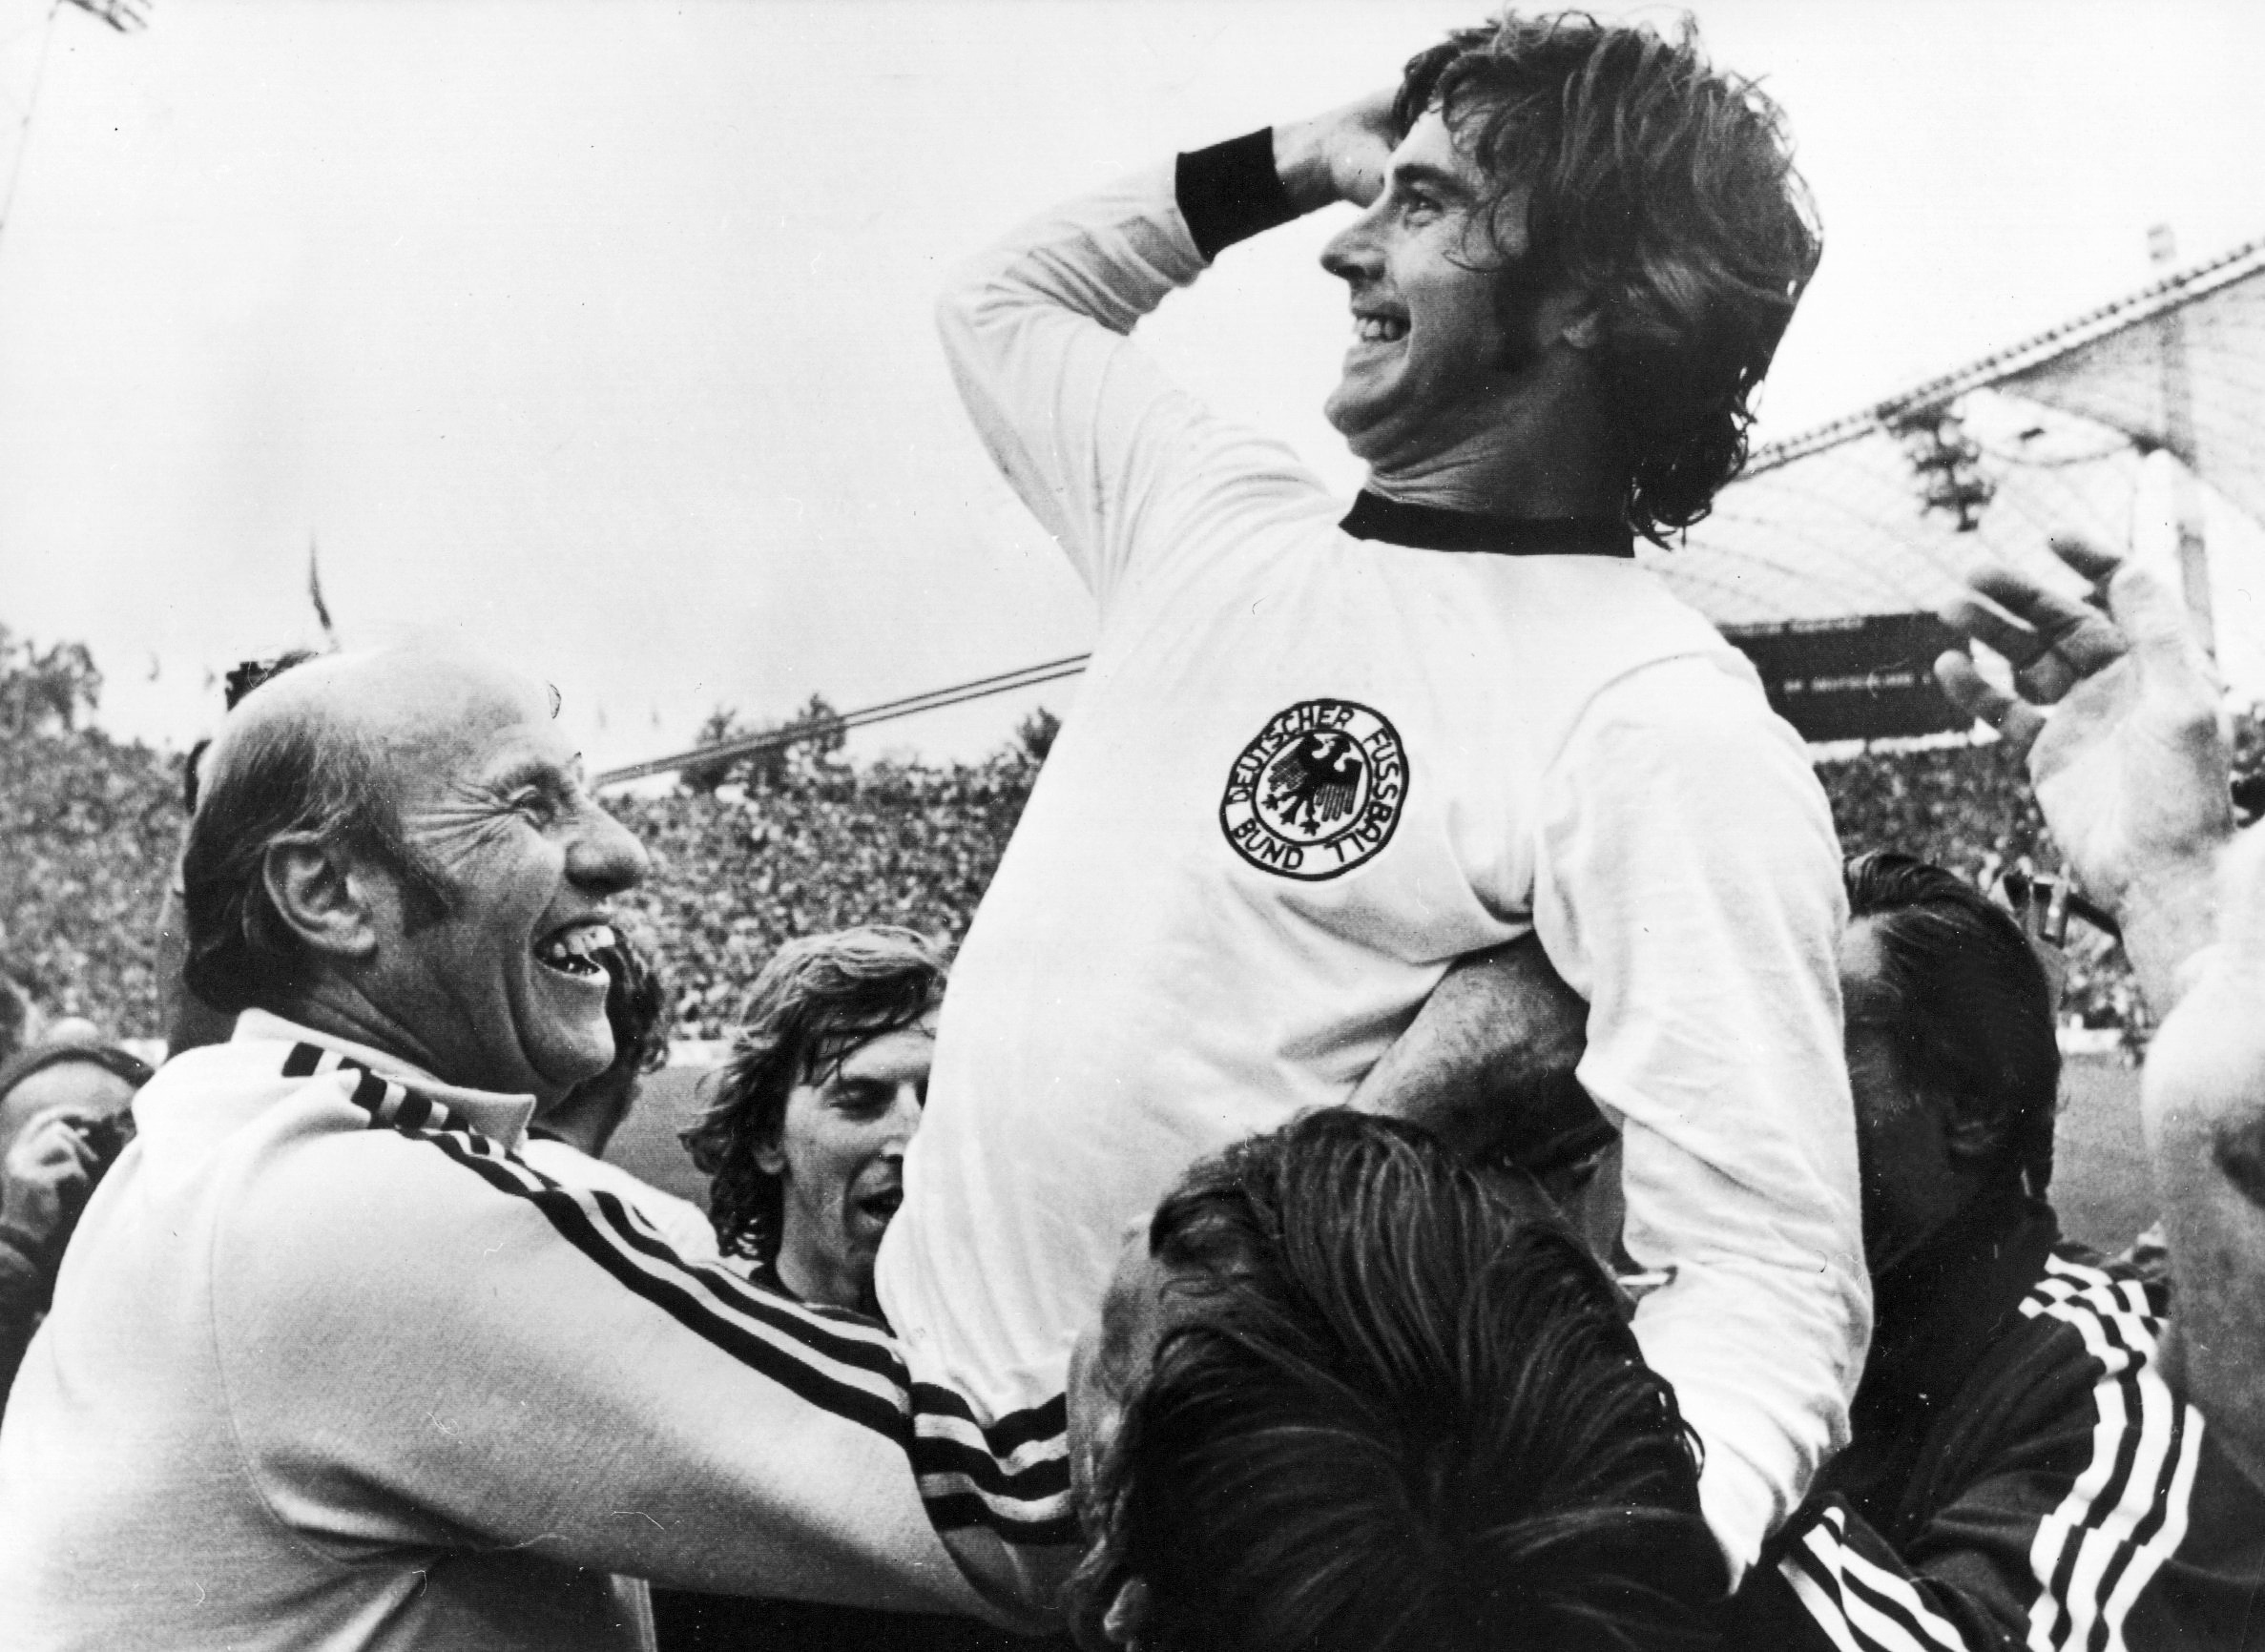 Foto del archivo, donde Gerd Müller festeja después de coronarse campeón en el Mundial de 1974. Foto: EFE